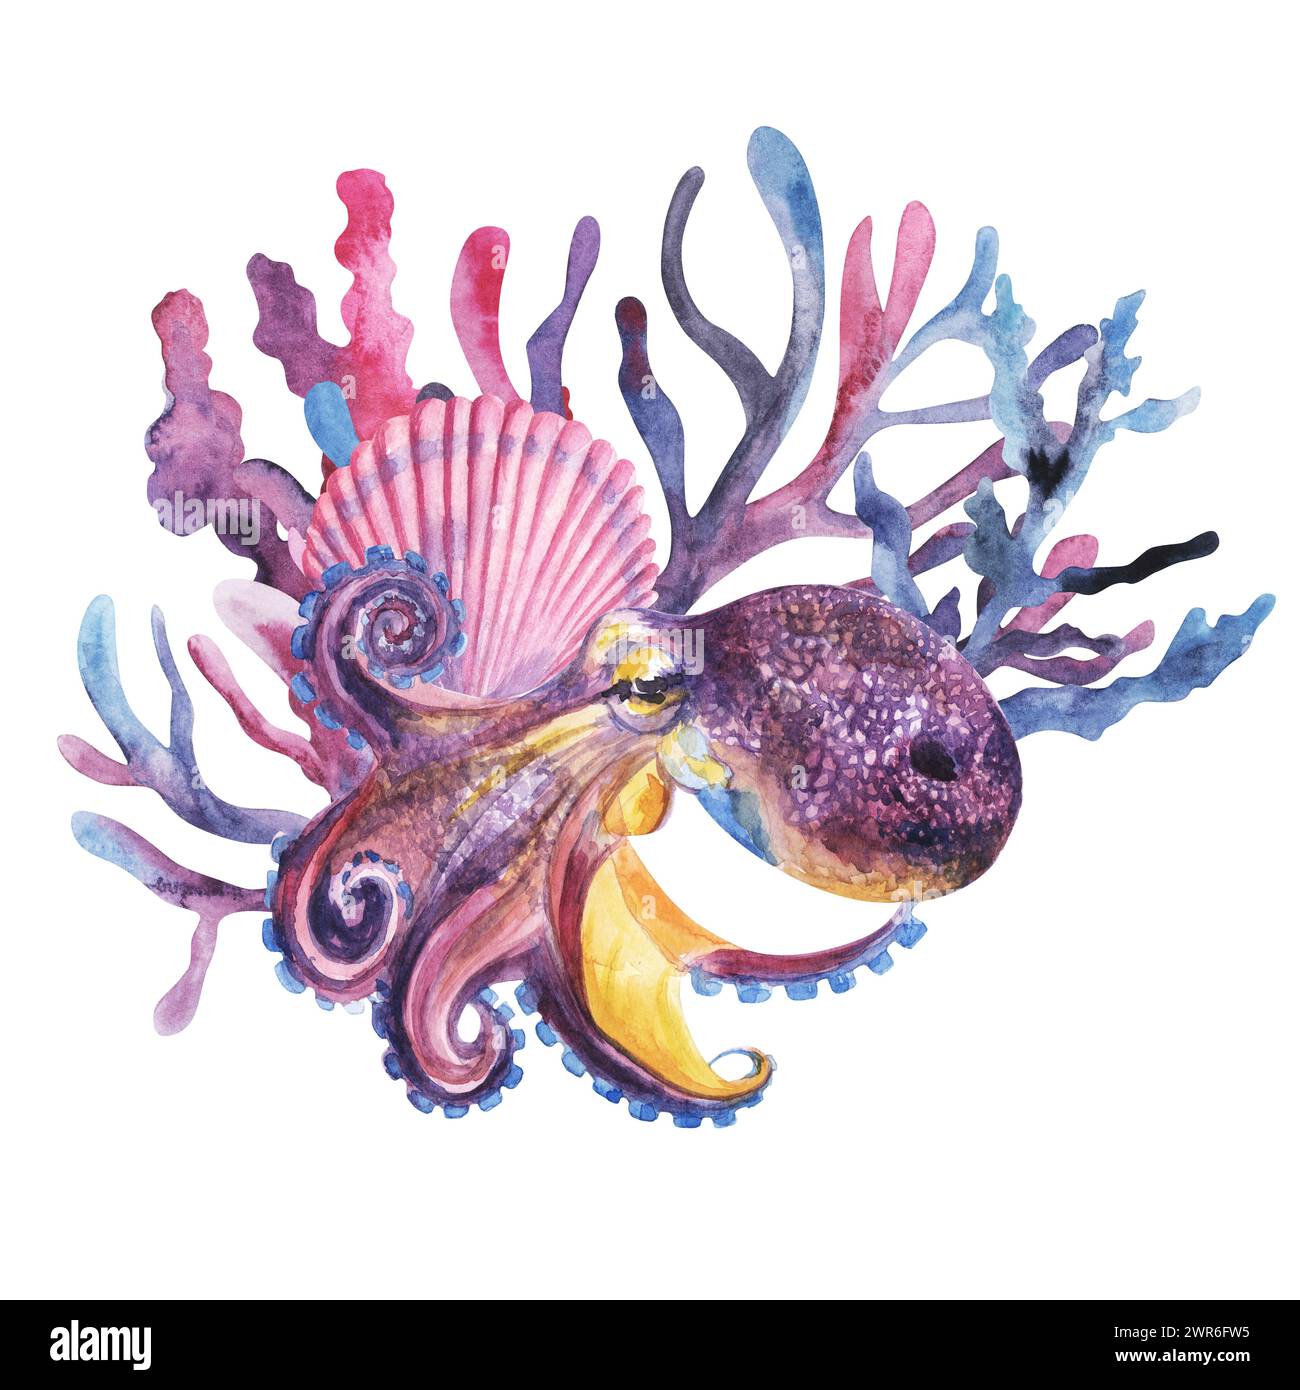 dans les profondeurs de la mer, poulpe violette géante avec coraux et coquille rose, style aquarelle, illustration dessinée à la main. Pour design, imprimé, textile, fabr Banque D'Images